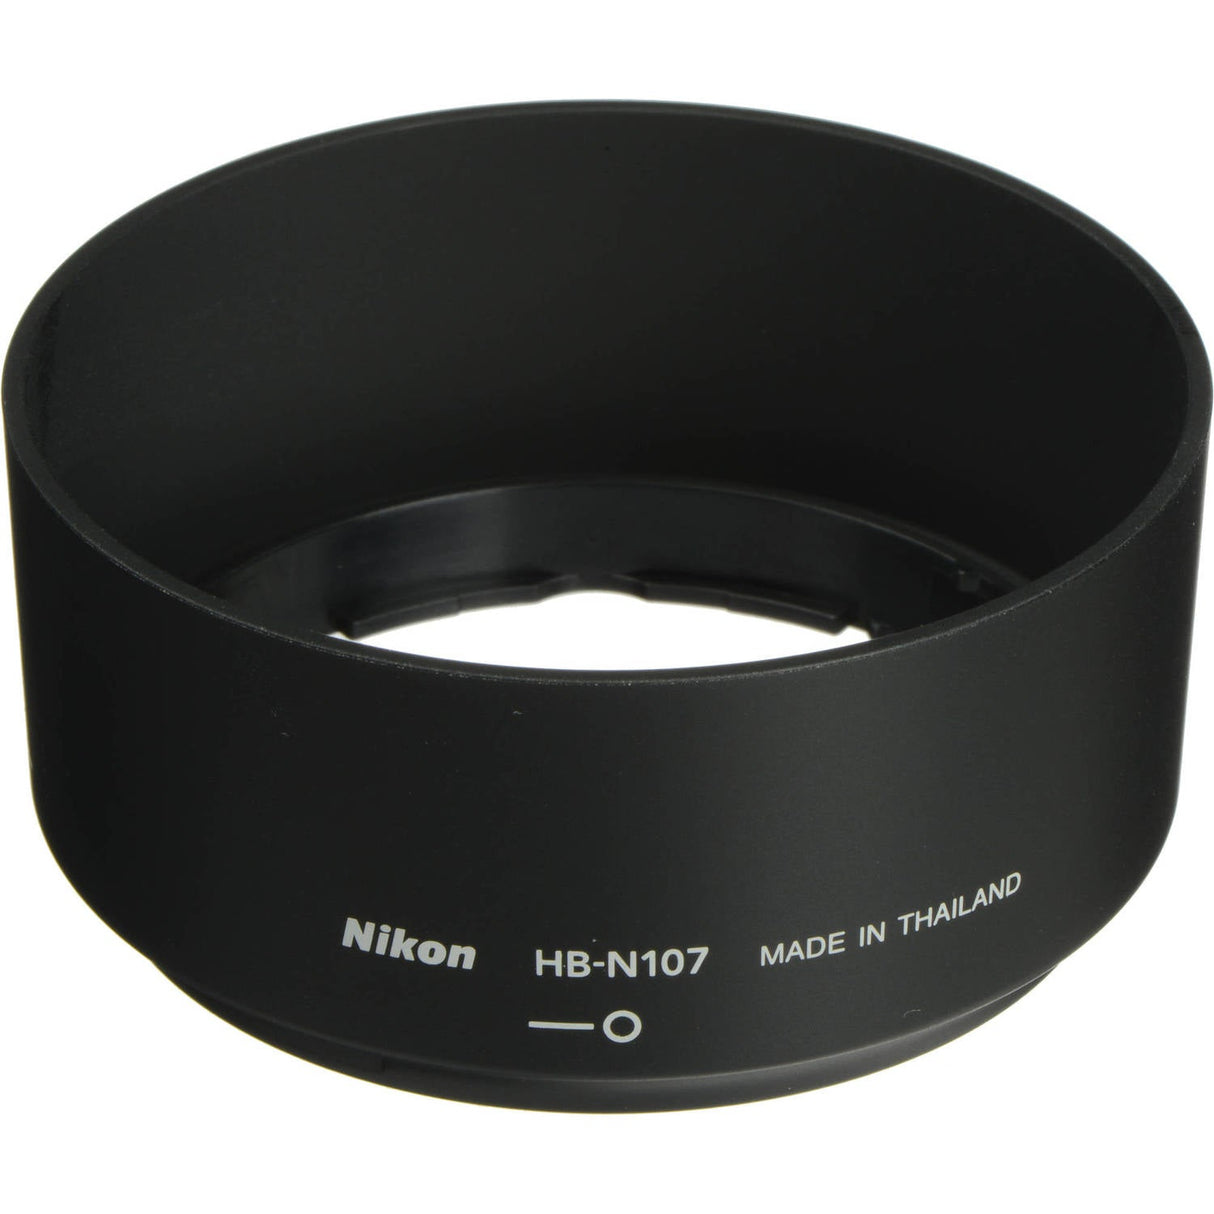 Nikon HB-N107 Lens Hood for 32mm f/1.2 1 NIKKOR Lens (Black)